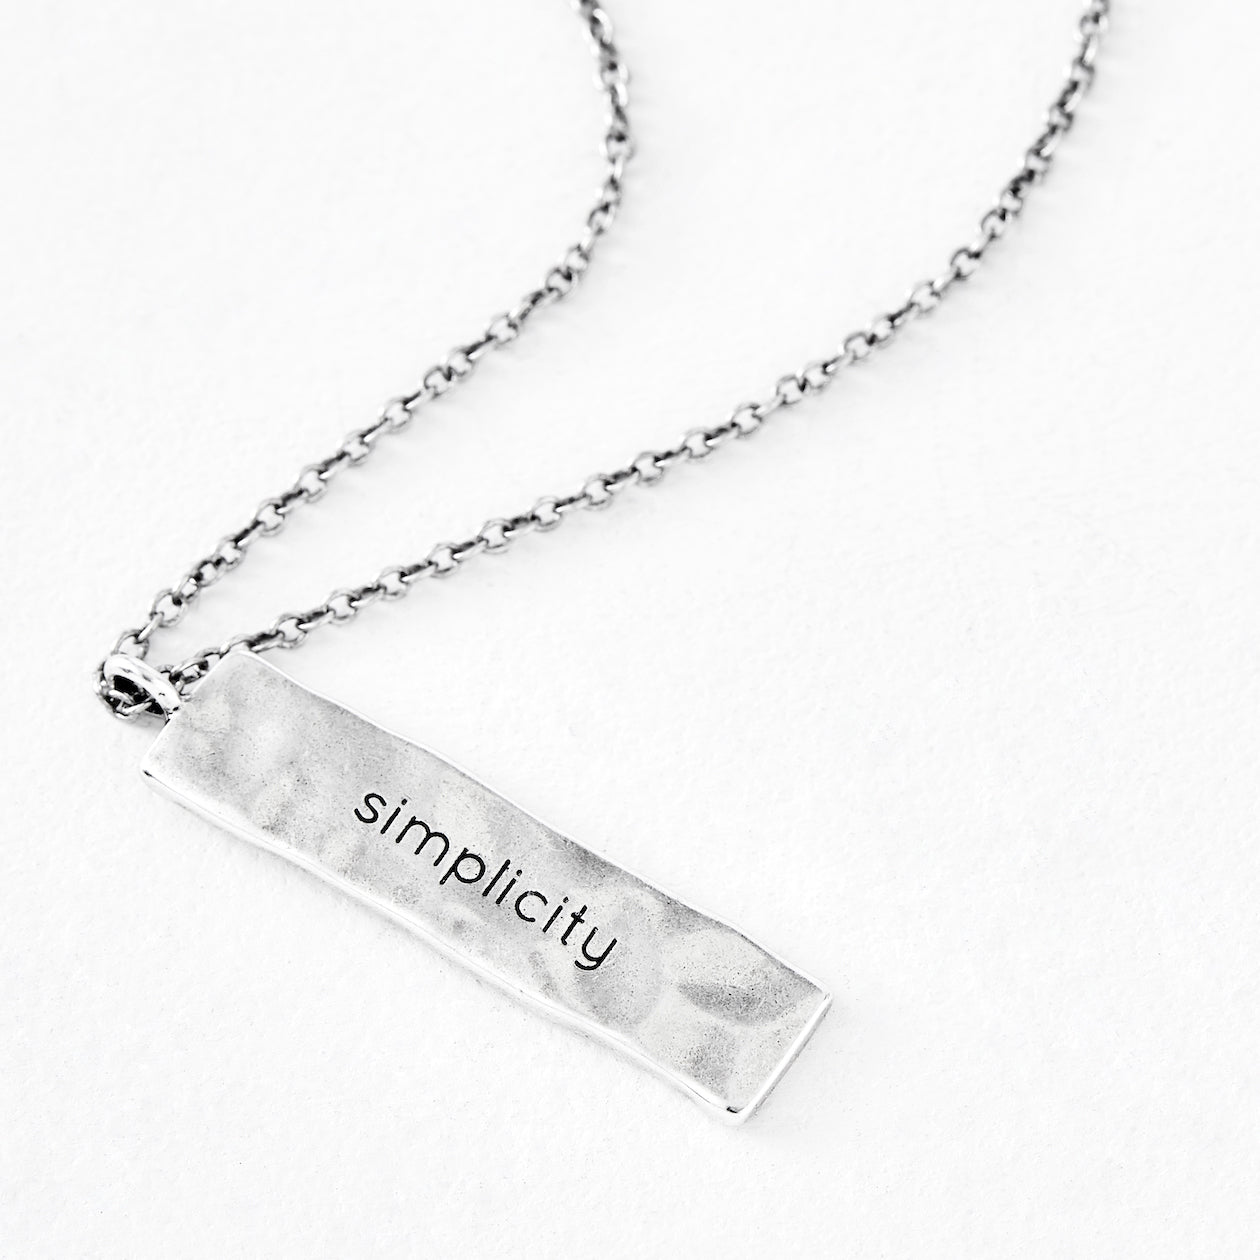 Luv AJ "simplicity" Silver Necklace Pendant